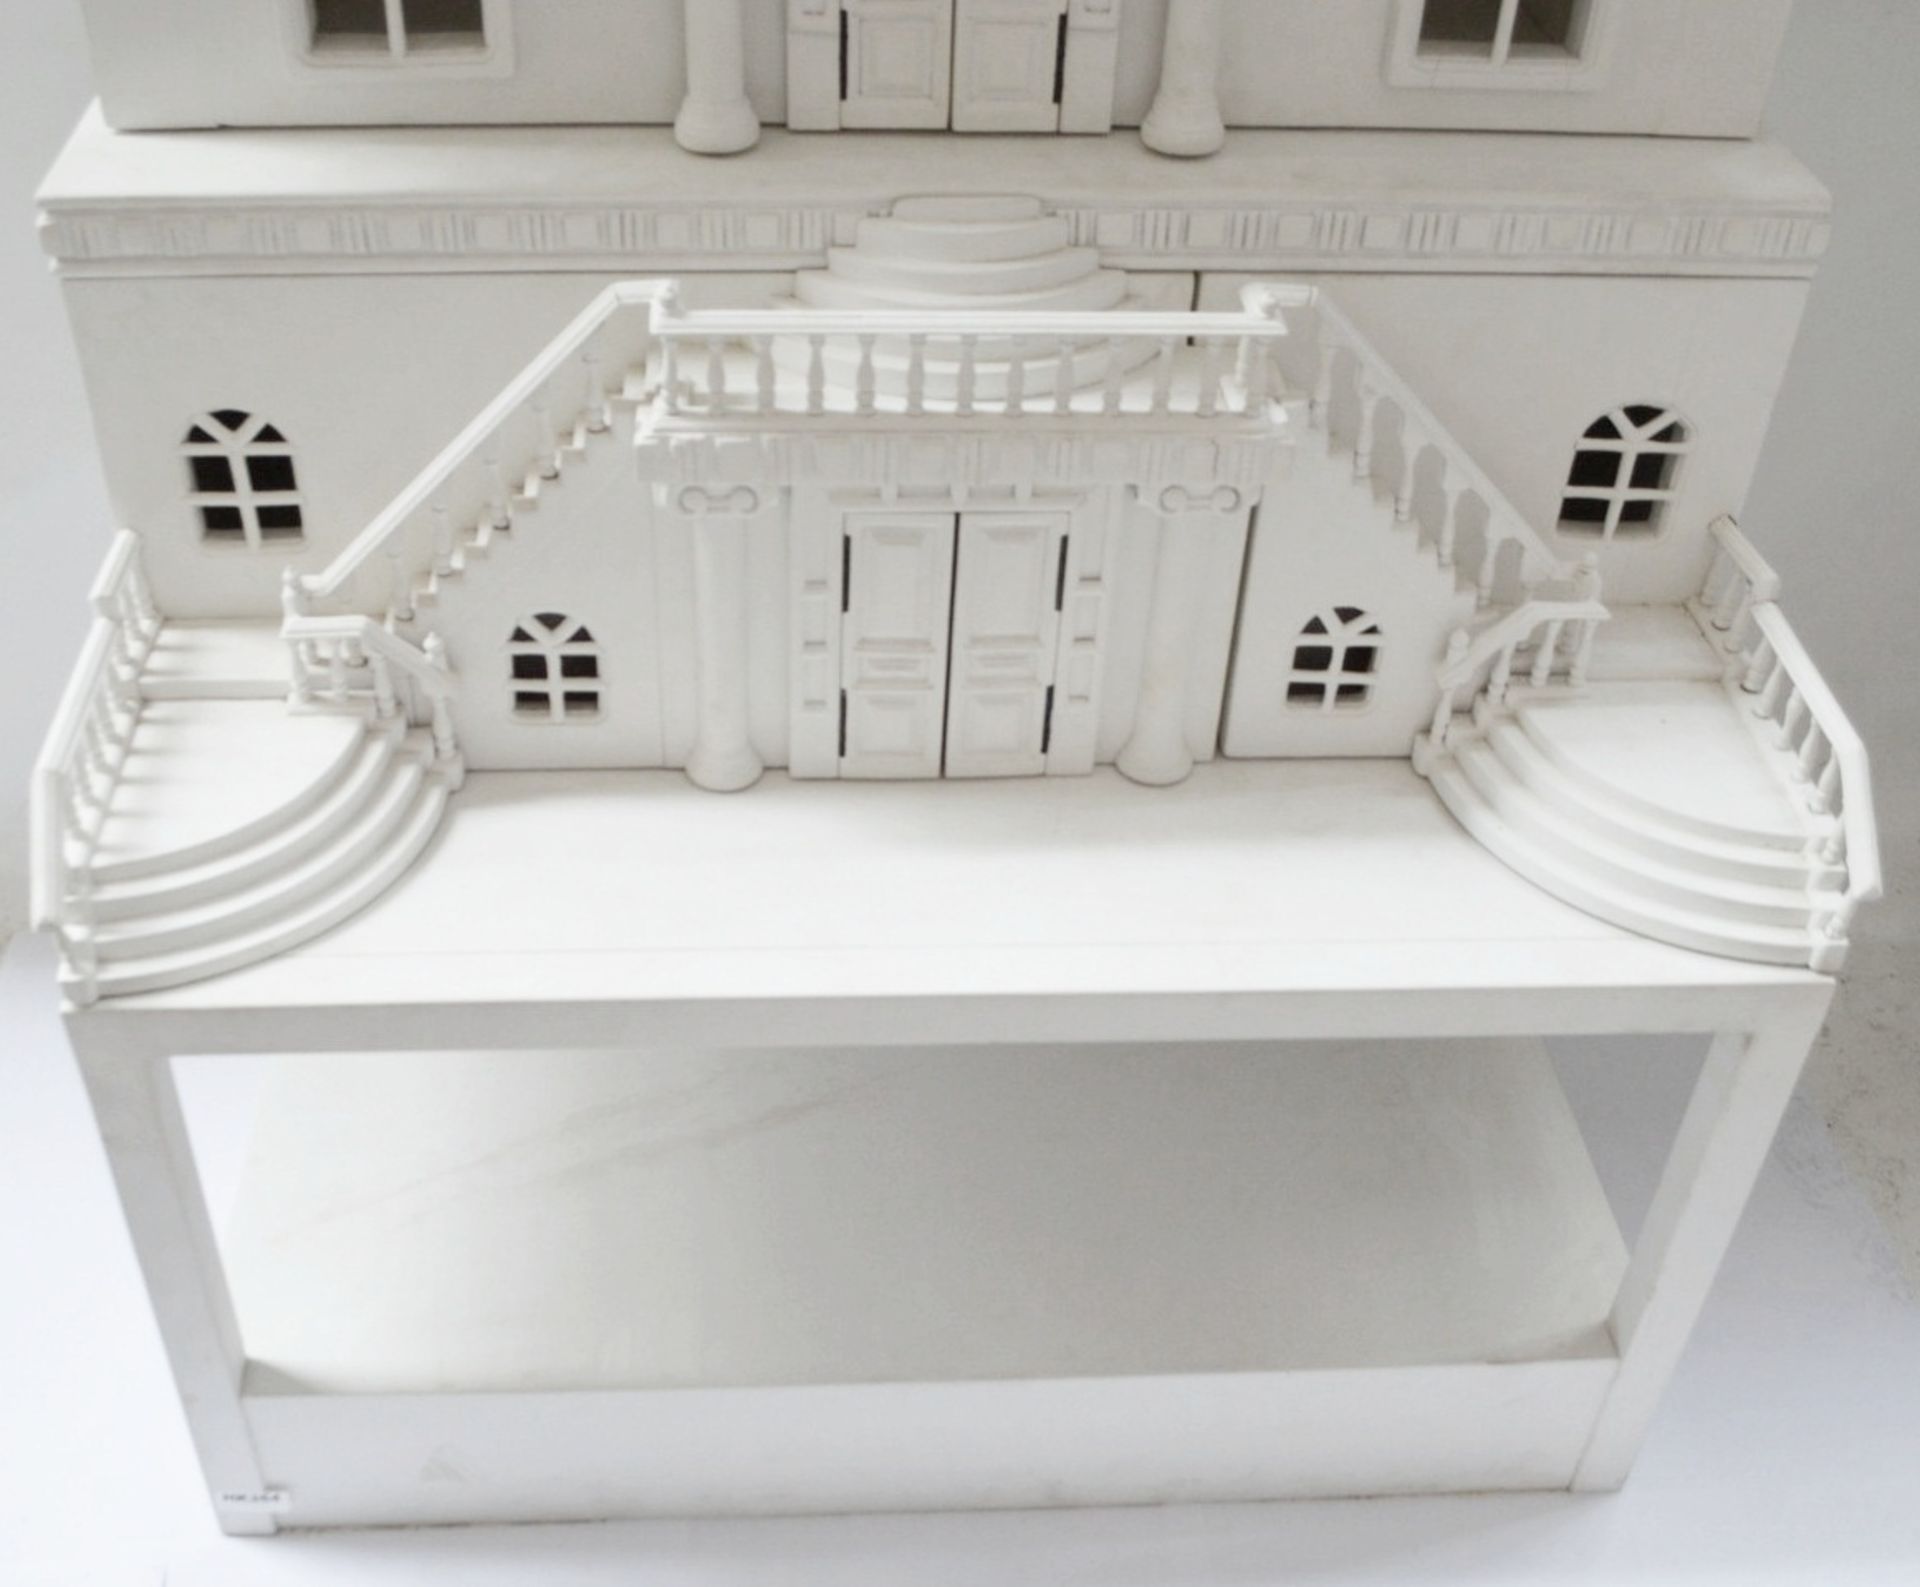 1 x Impressive Bespoke Hand Crafted Wooden Dolls House In White - Bild 5 aus 19